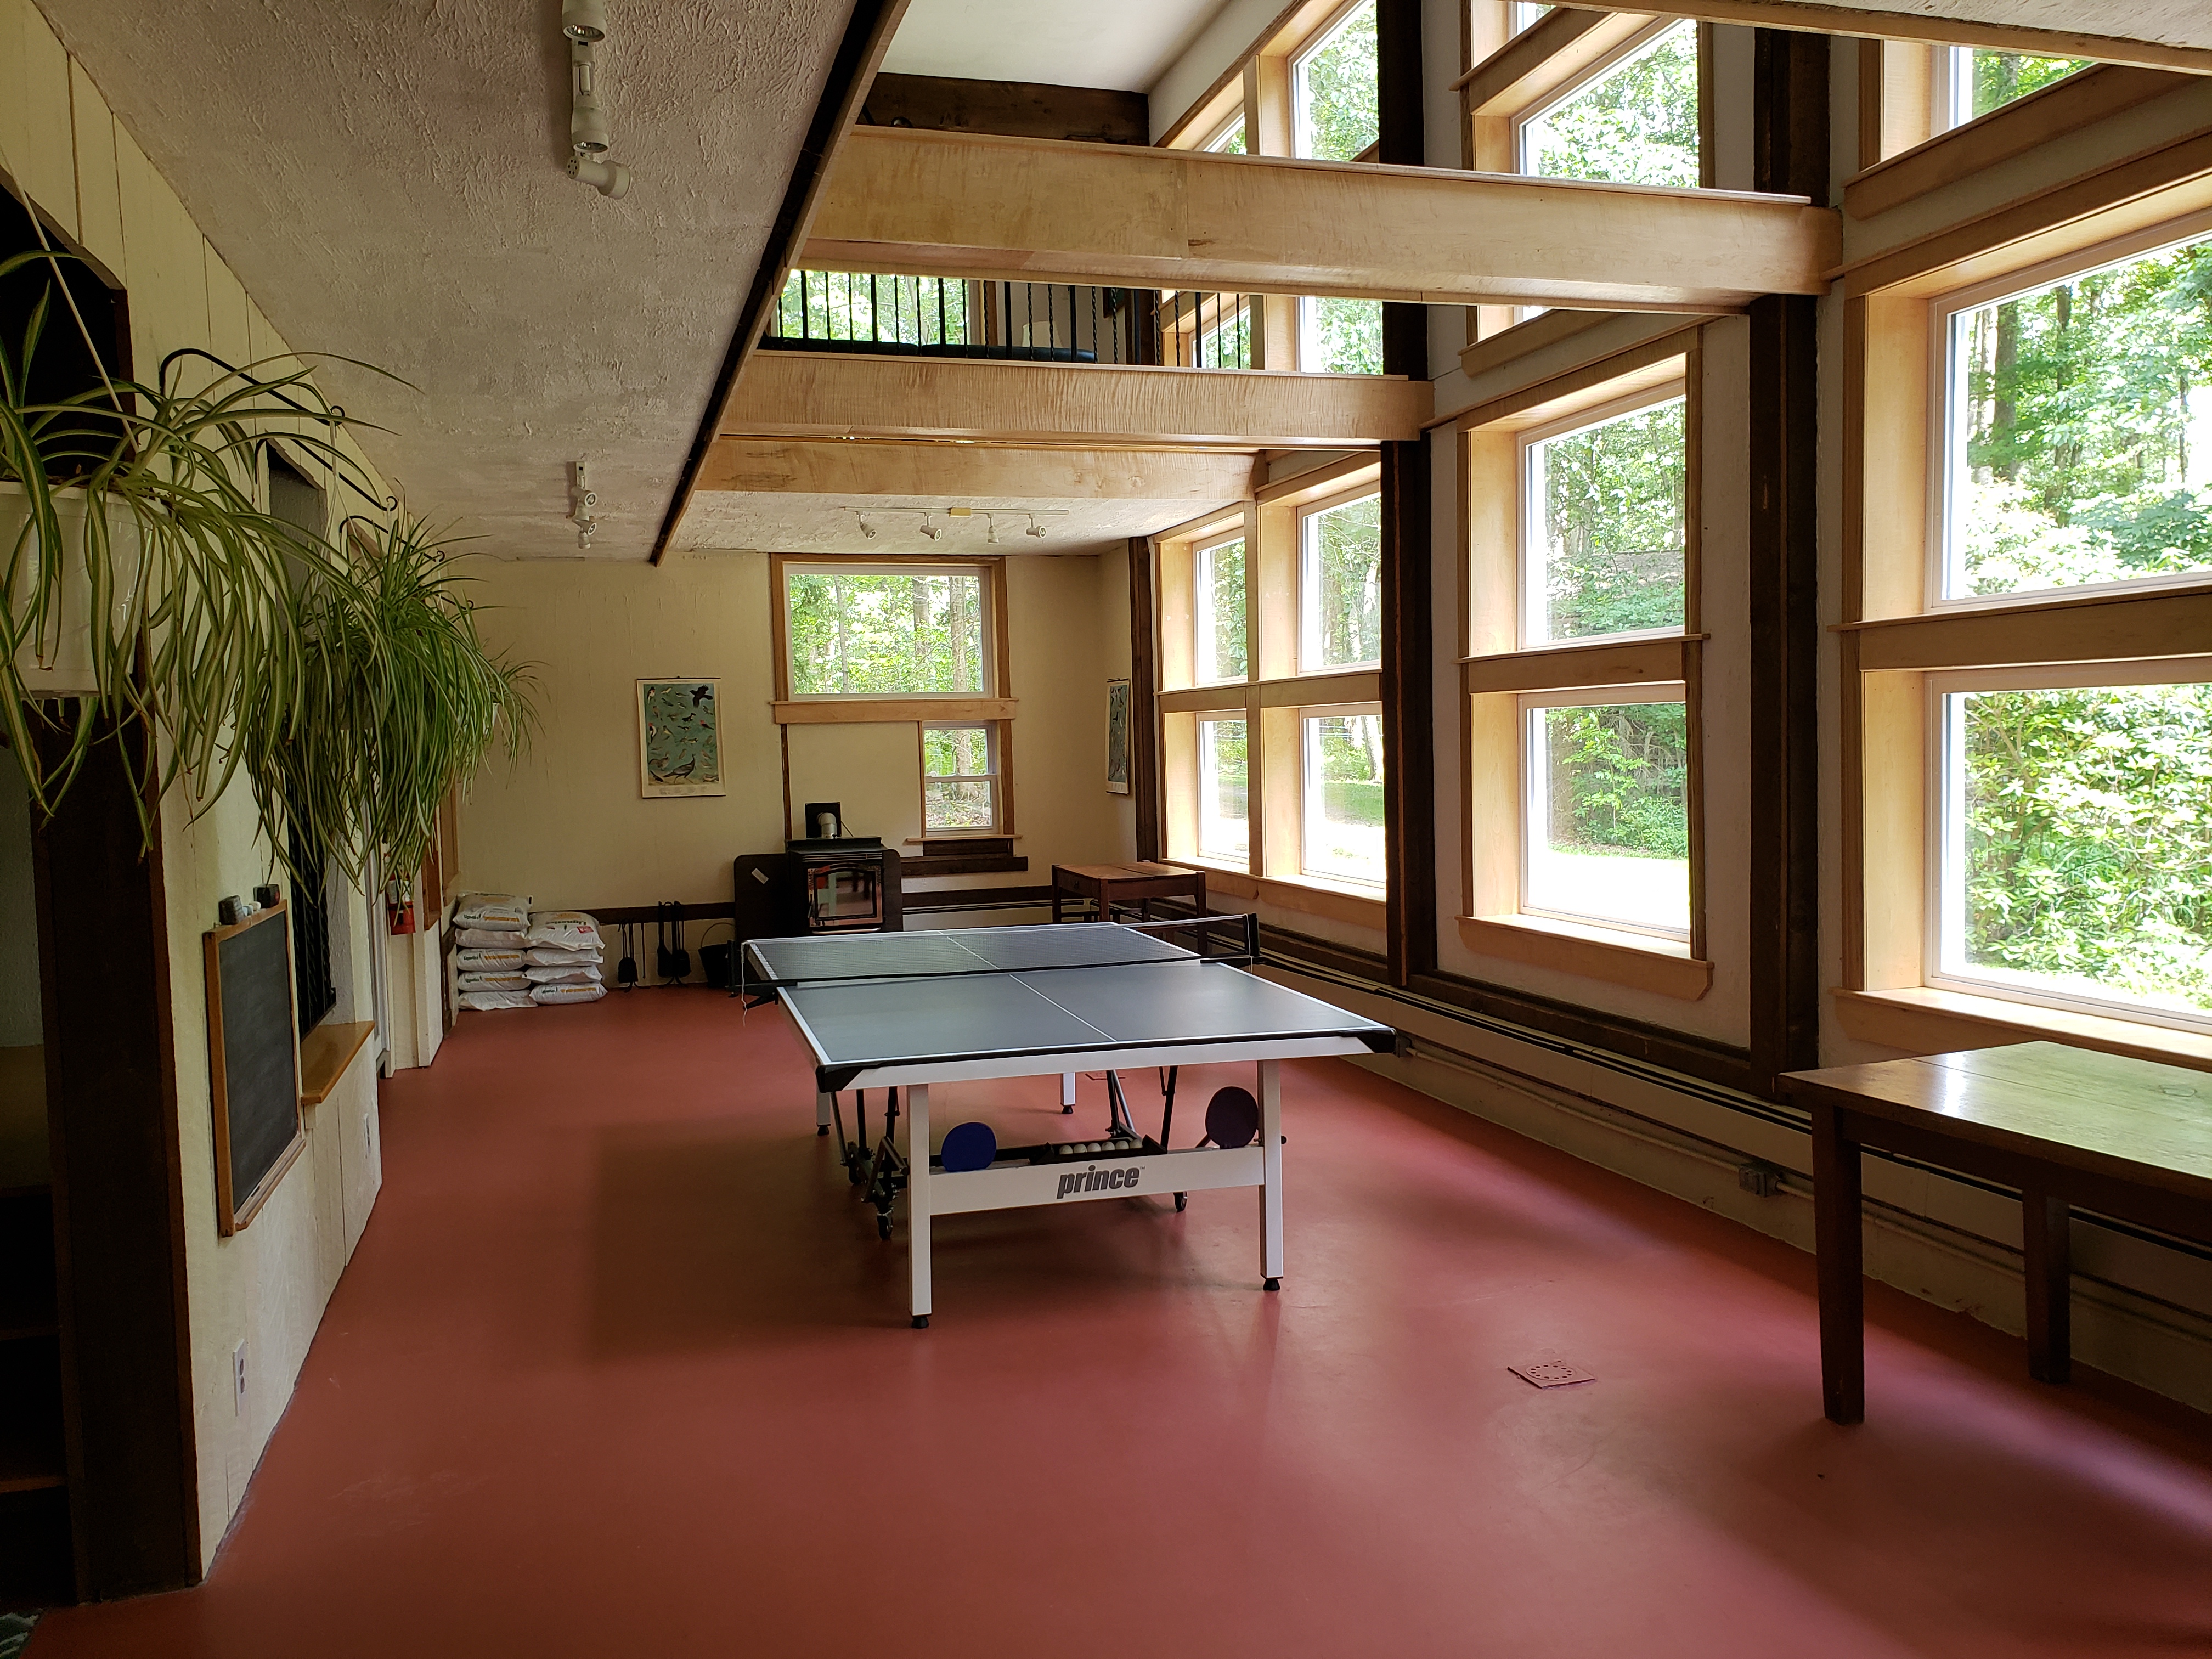 Table tennis in atrium